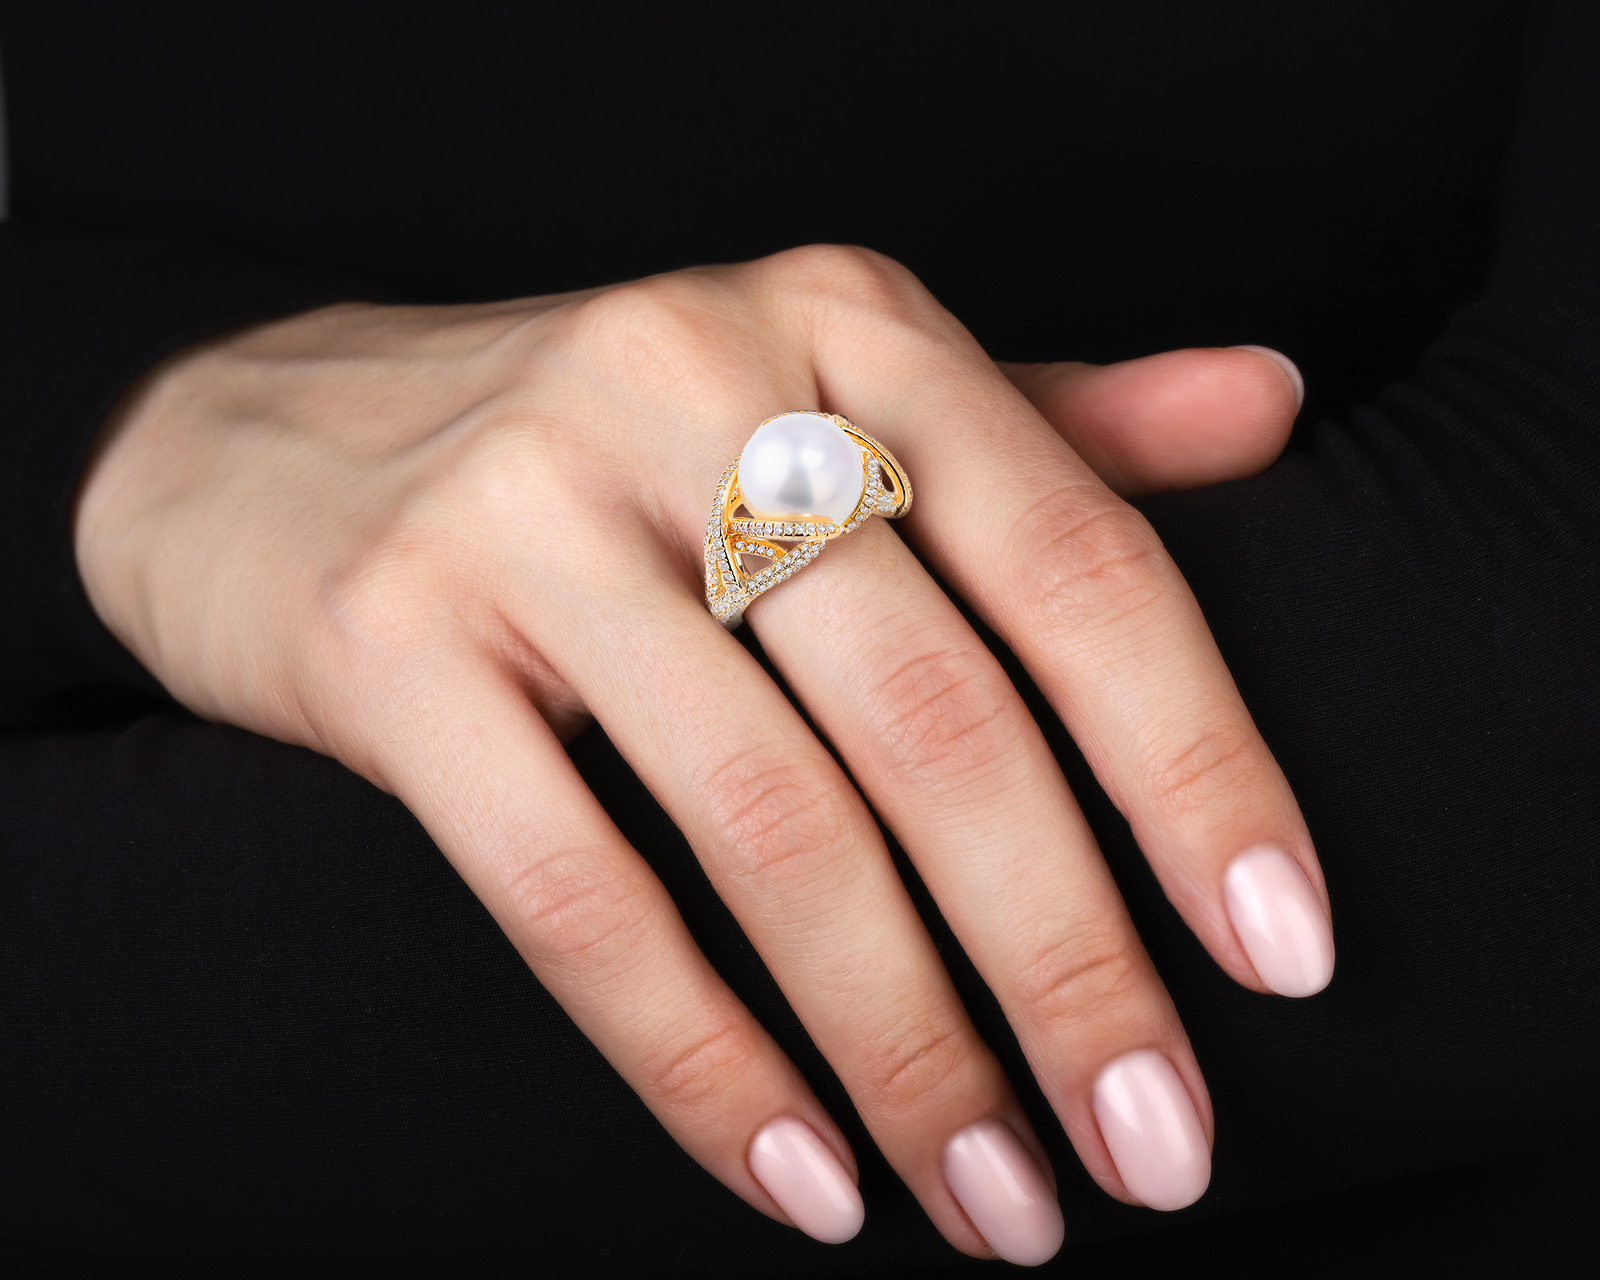 Оригинальное золотое кольцо с жемчугом 12.60 мм Mikimoto